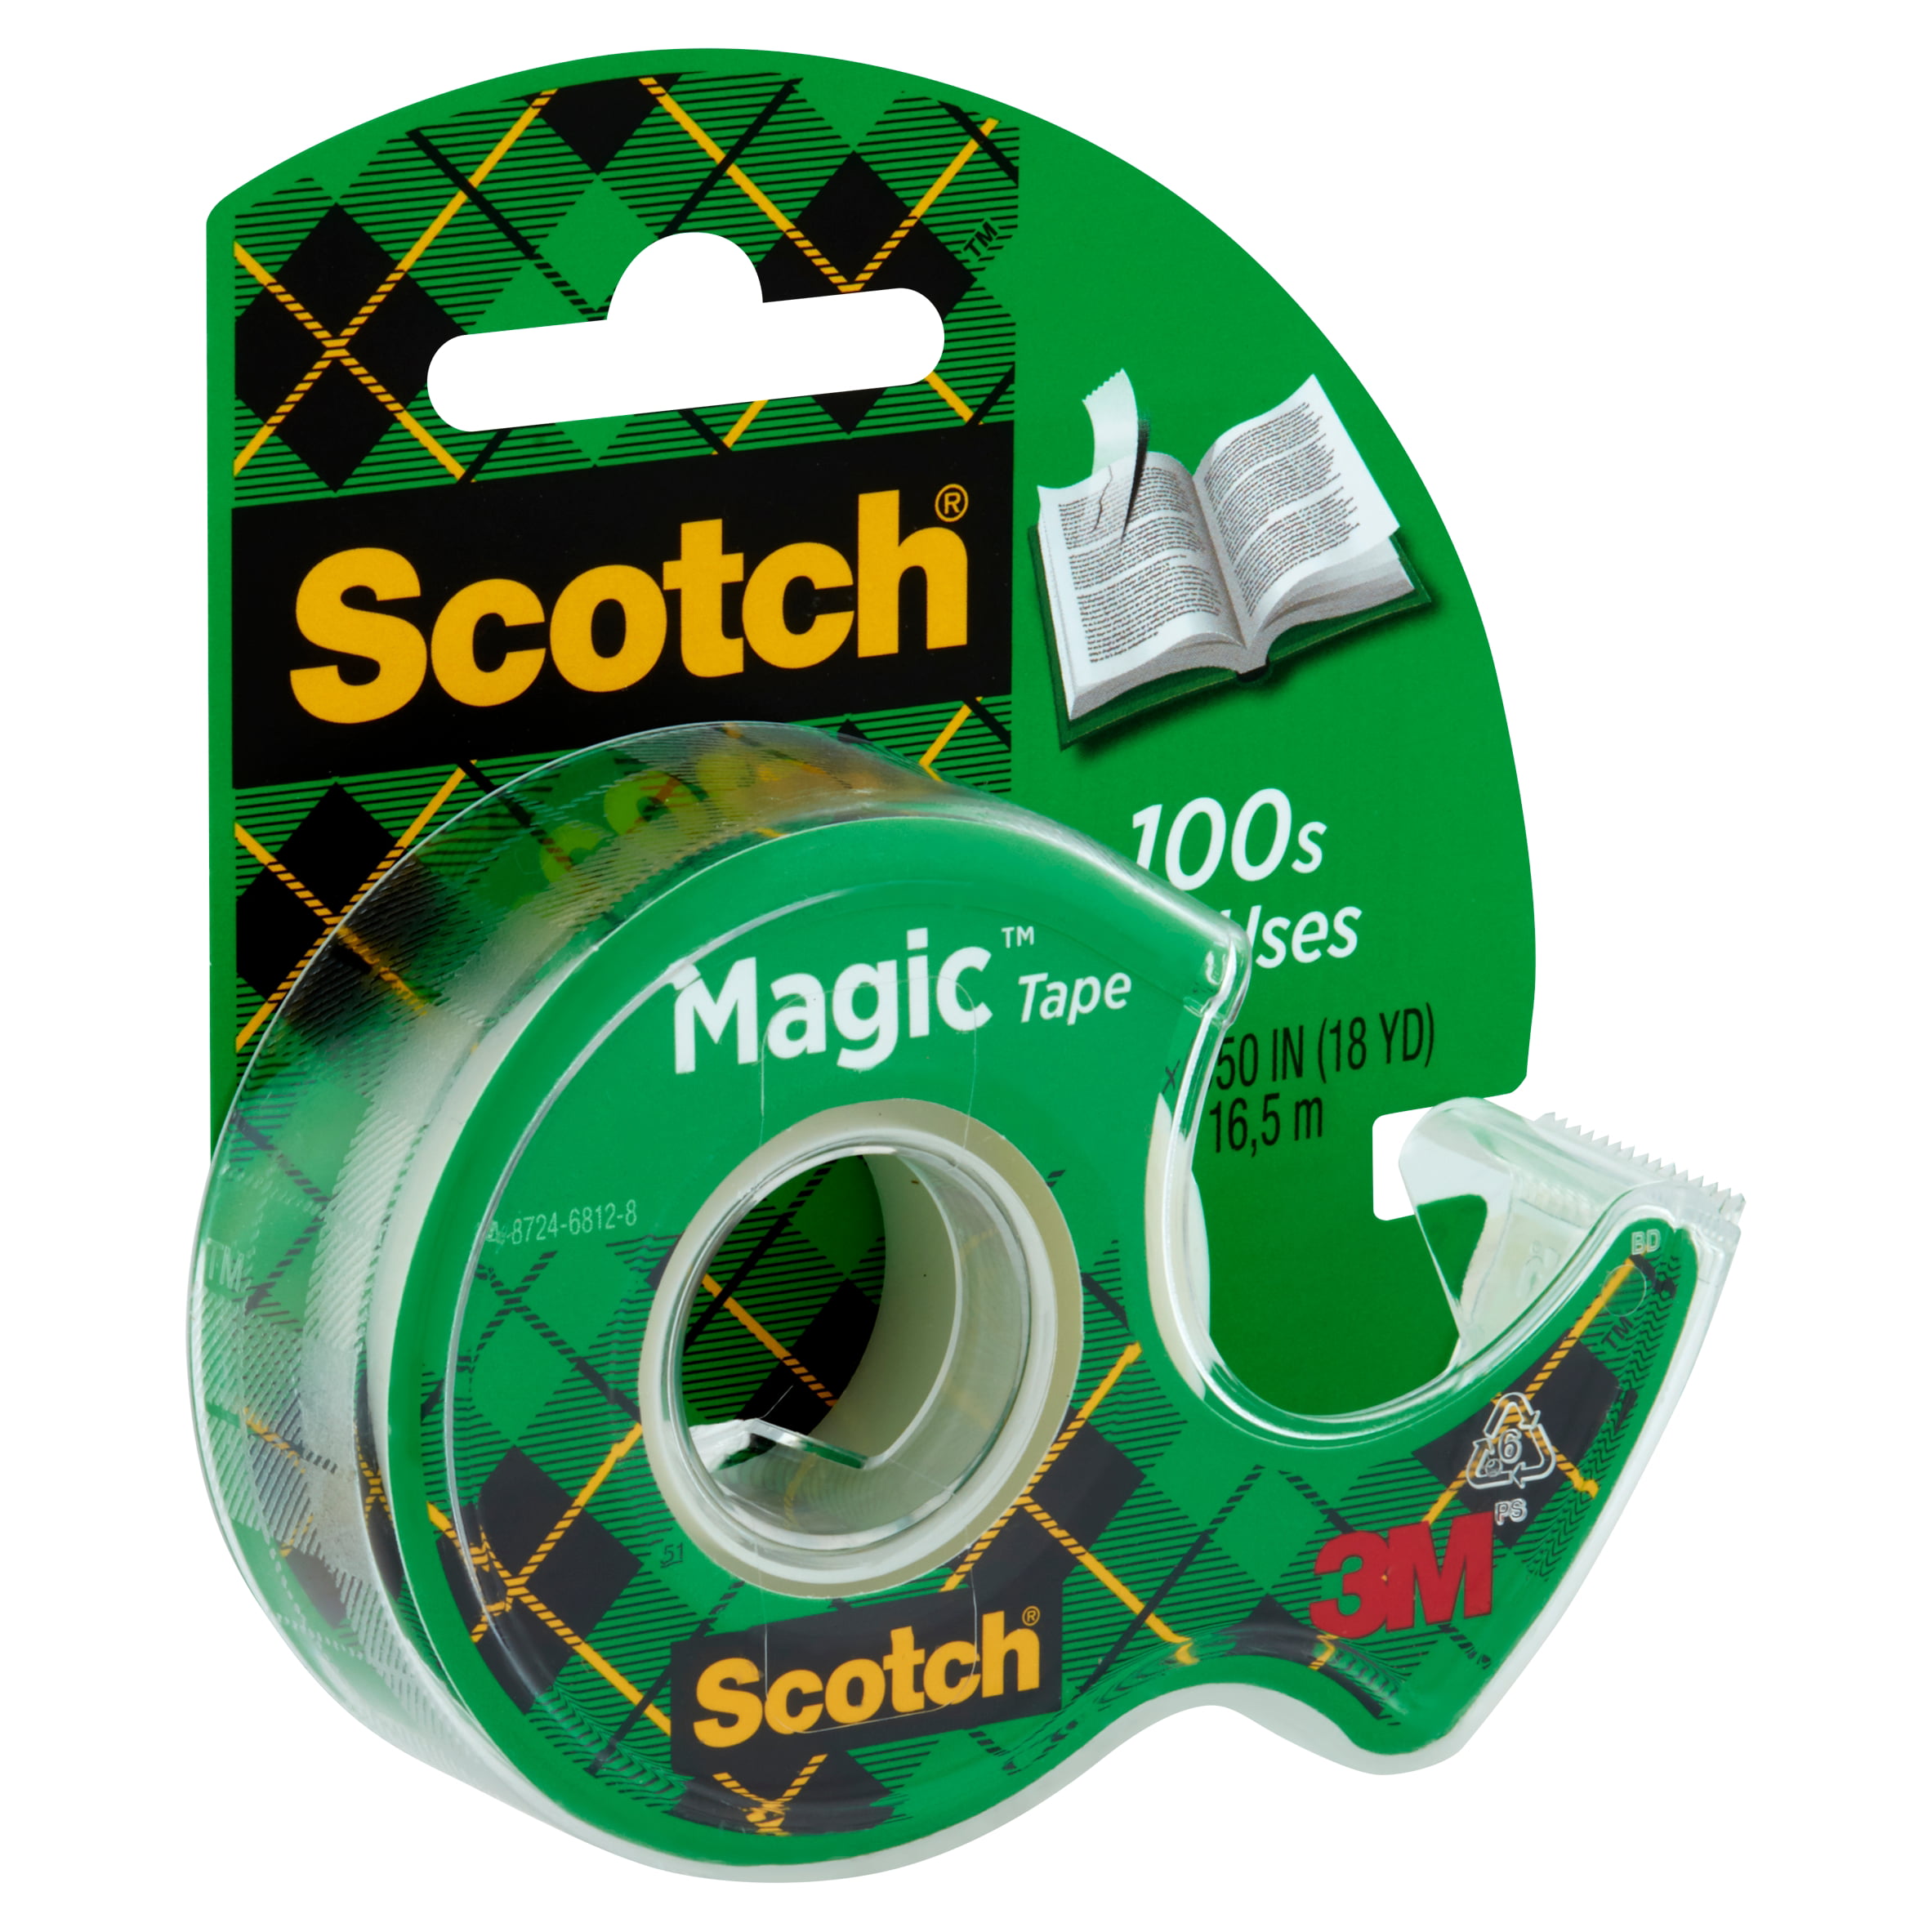 3M Scotch Magic Tape 12mmx66m 8101266 